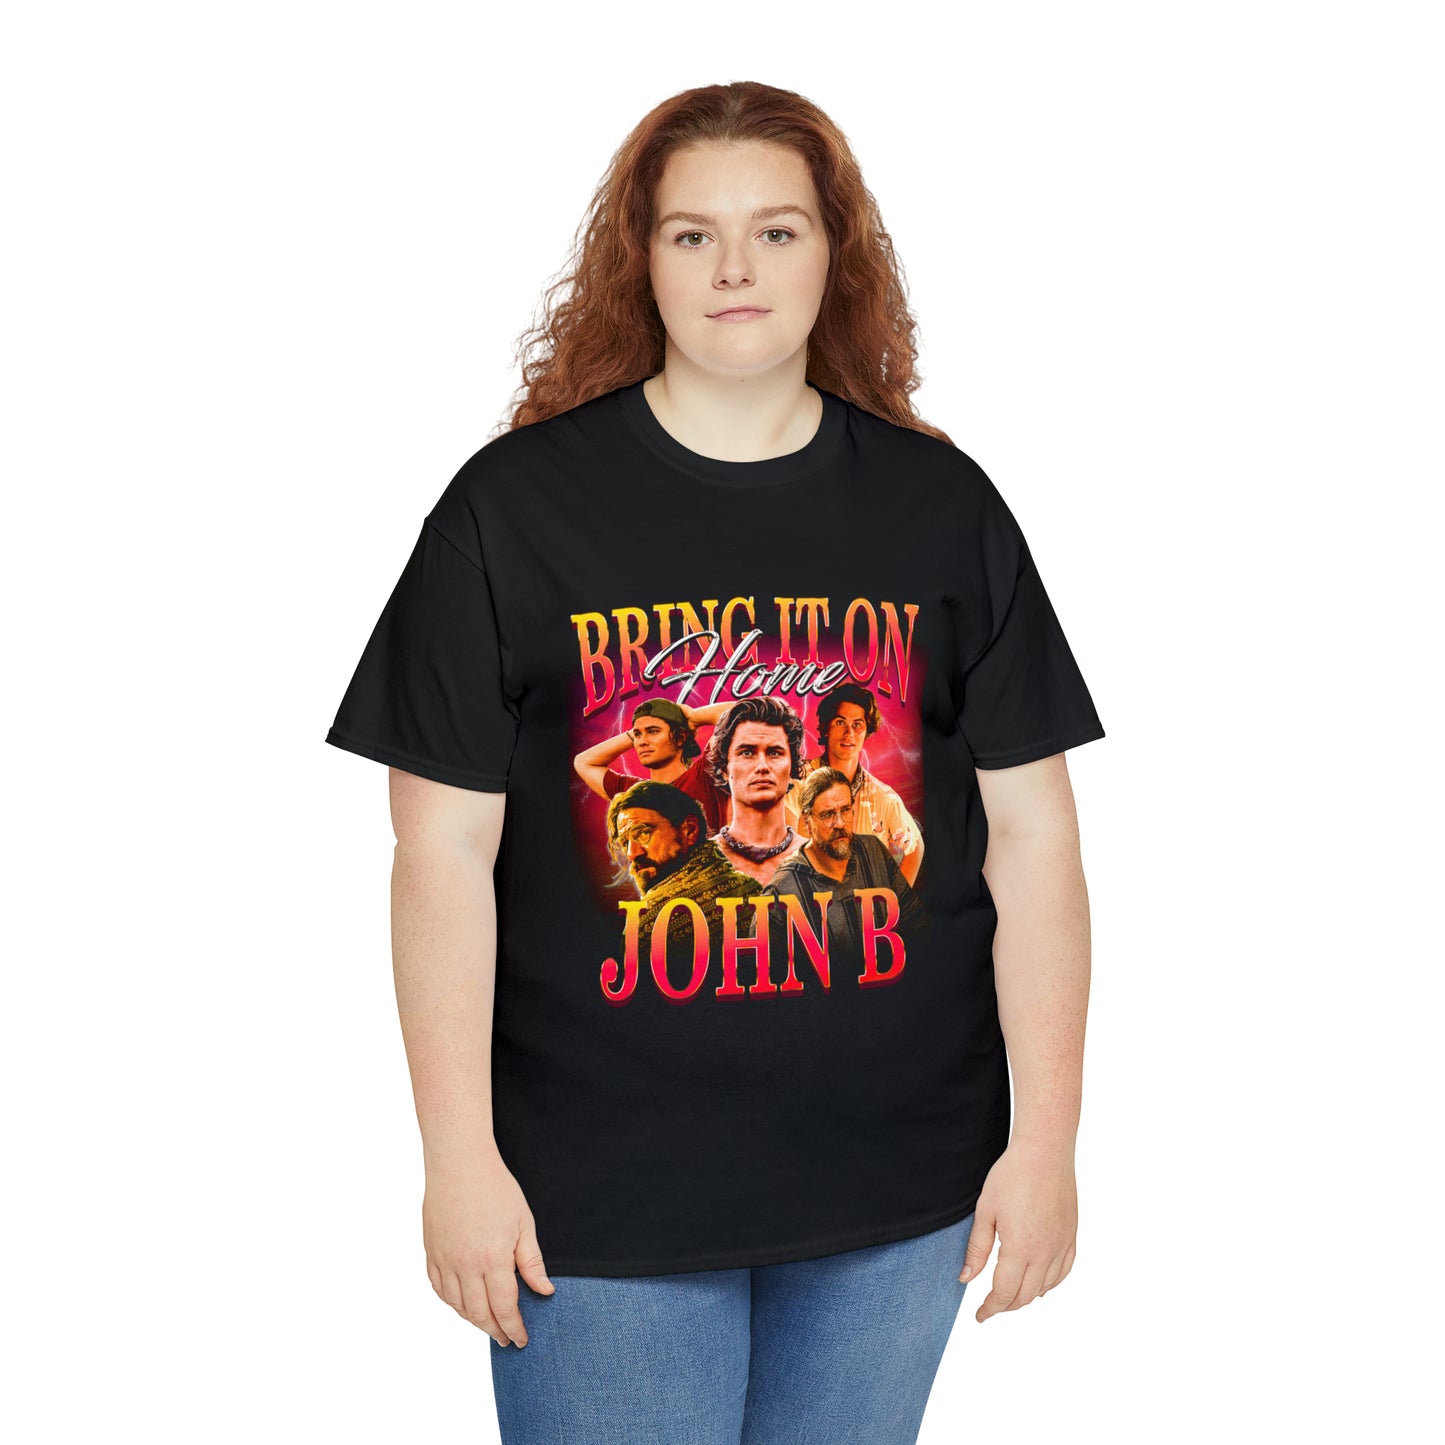 Bring It on Home, John B T-Shirt!